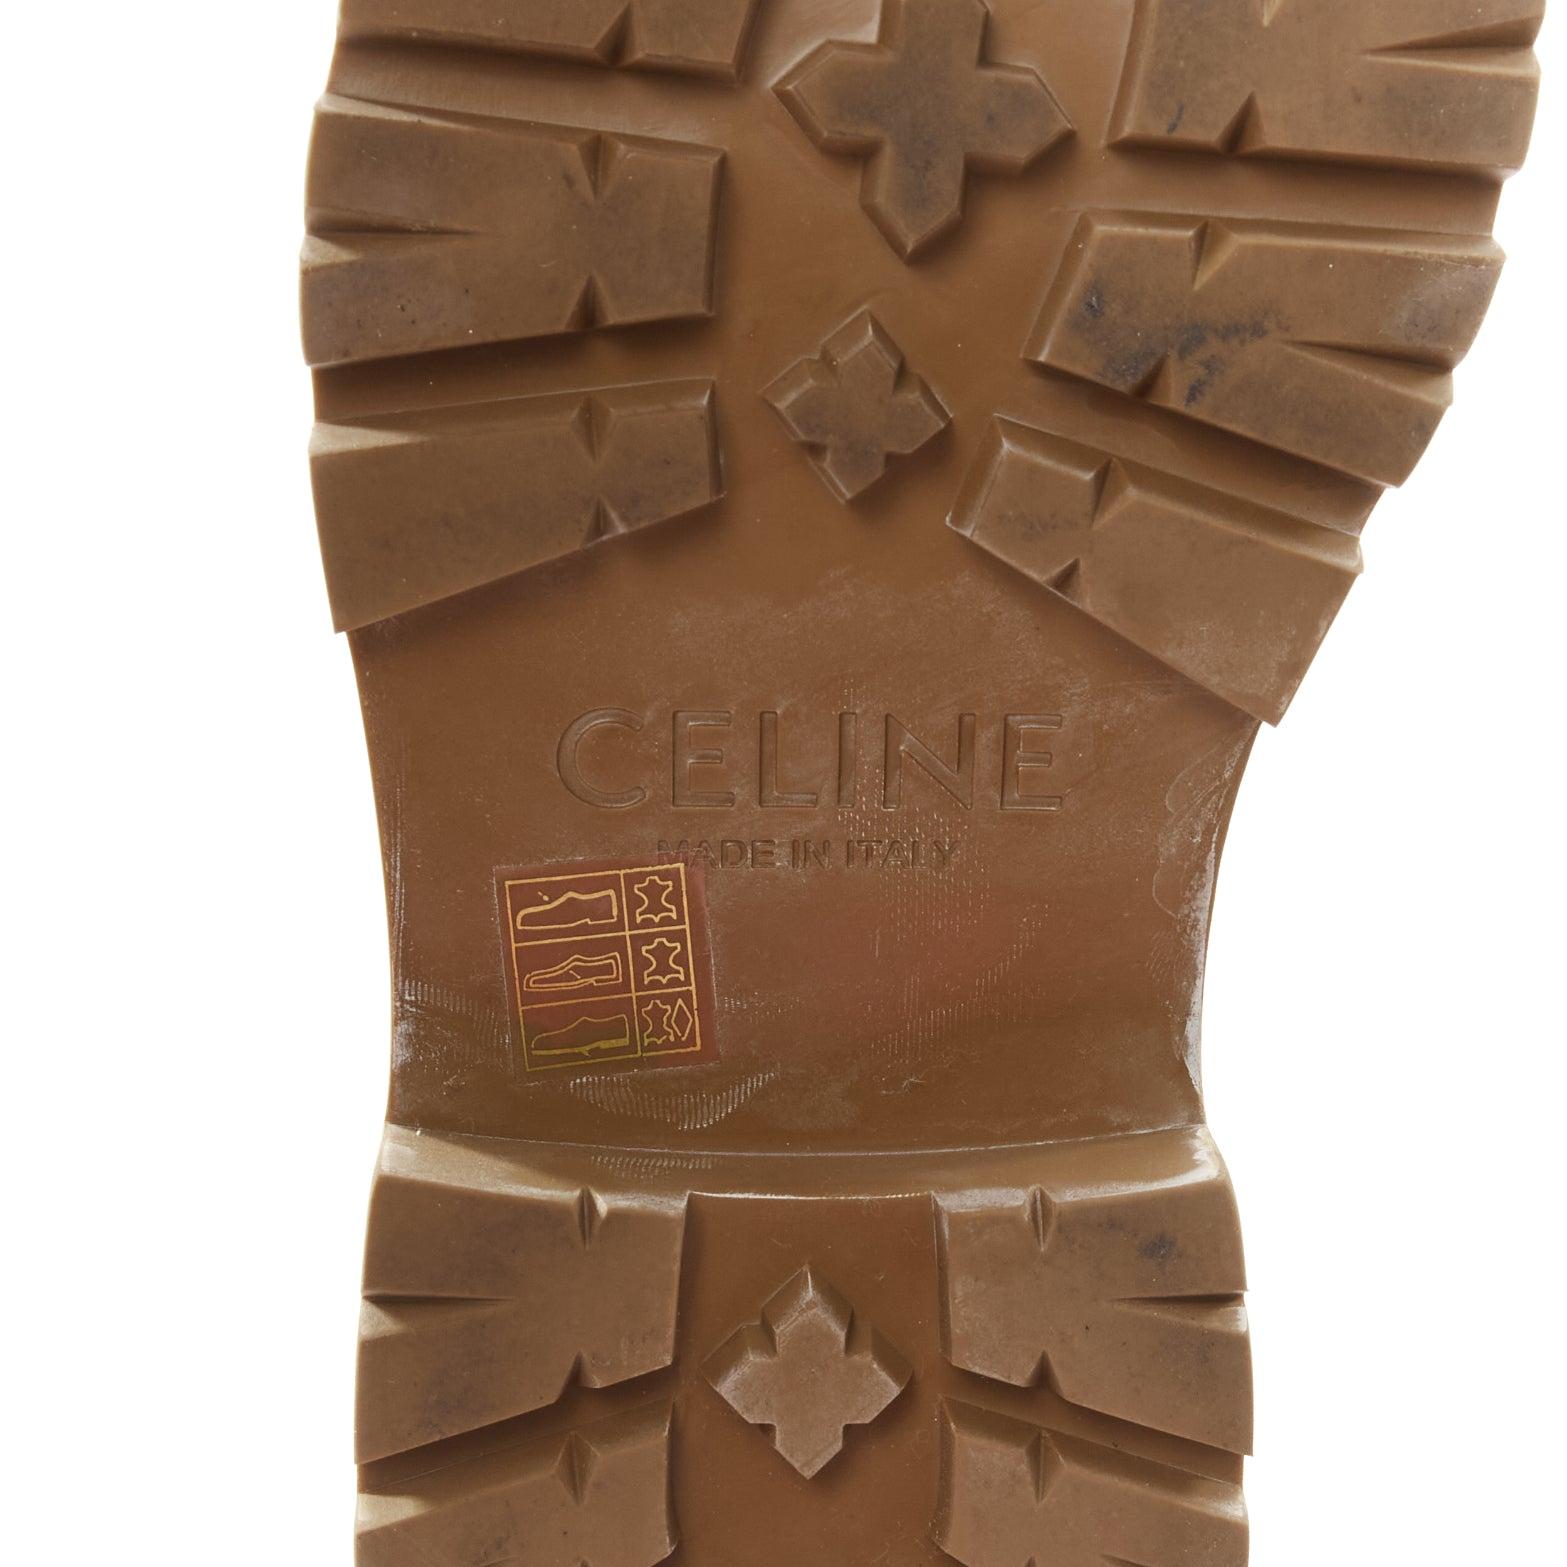 CELINE Triomphe Bulky logo tan calfskin lace up worker lug sole boots EU38 6